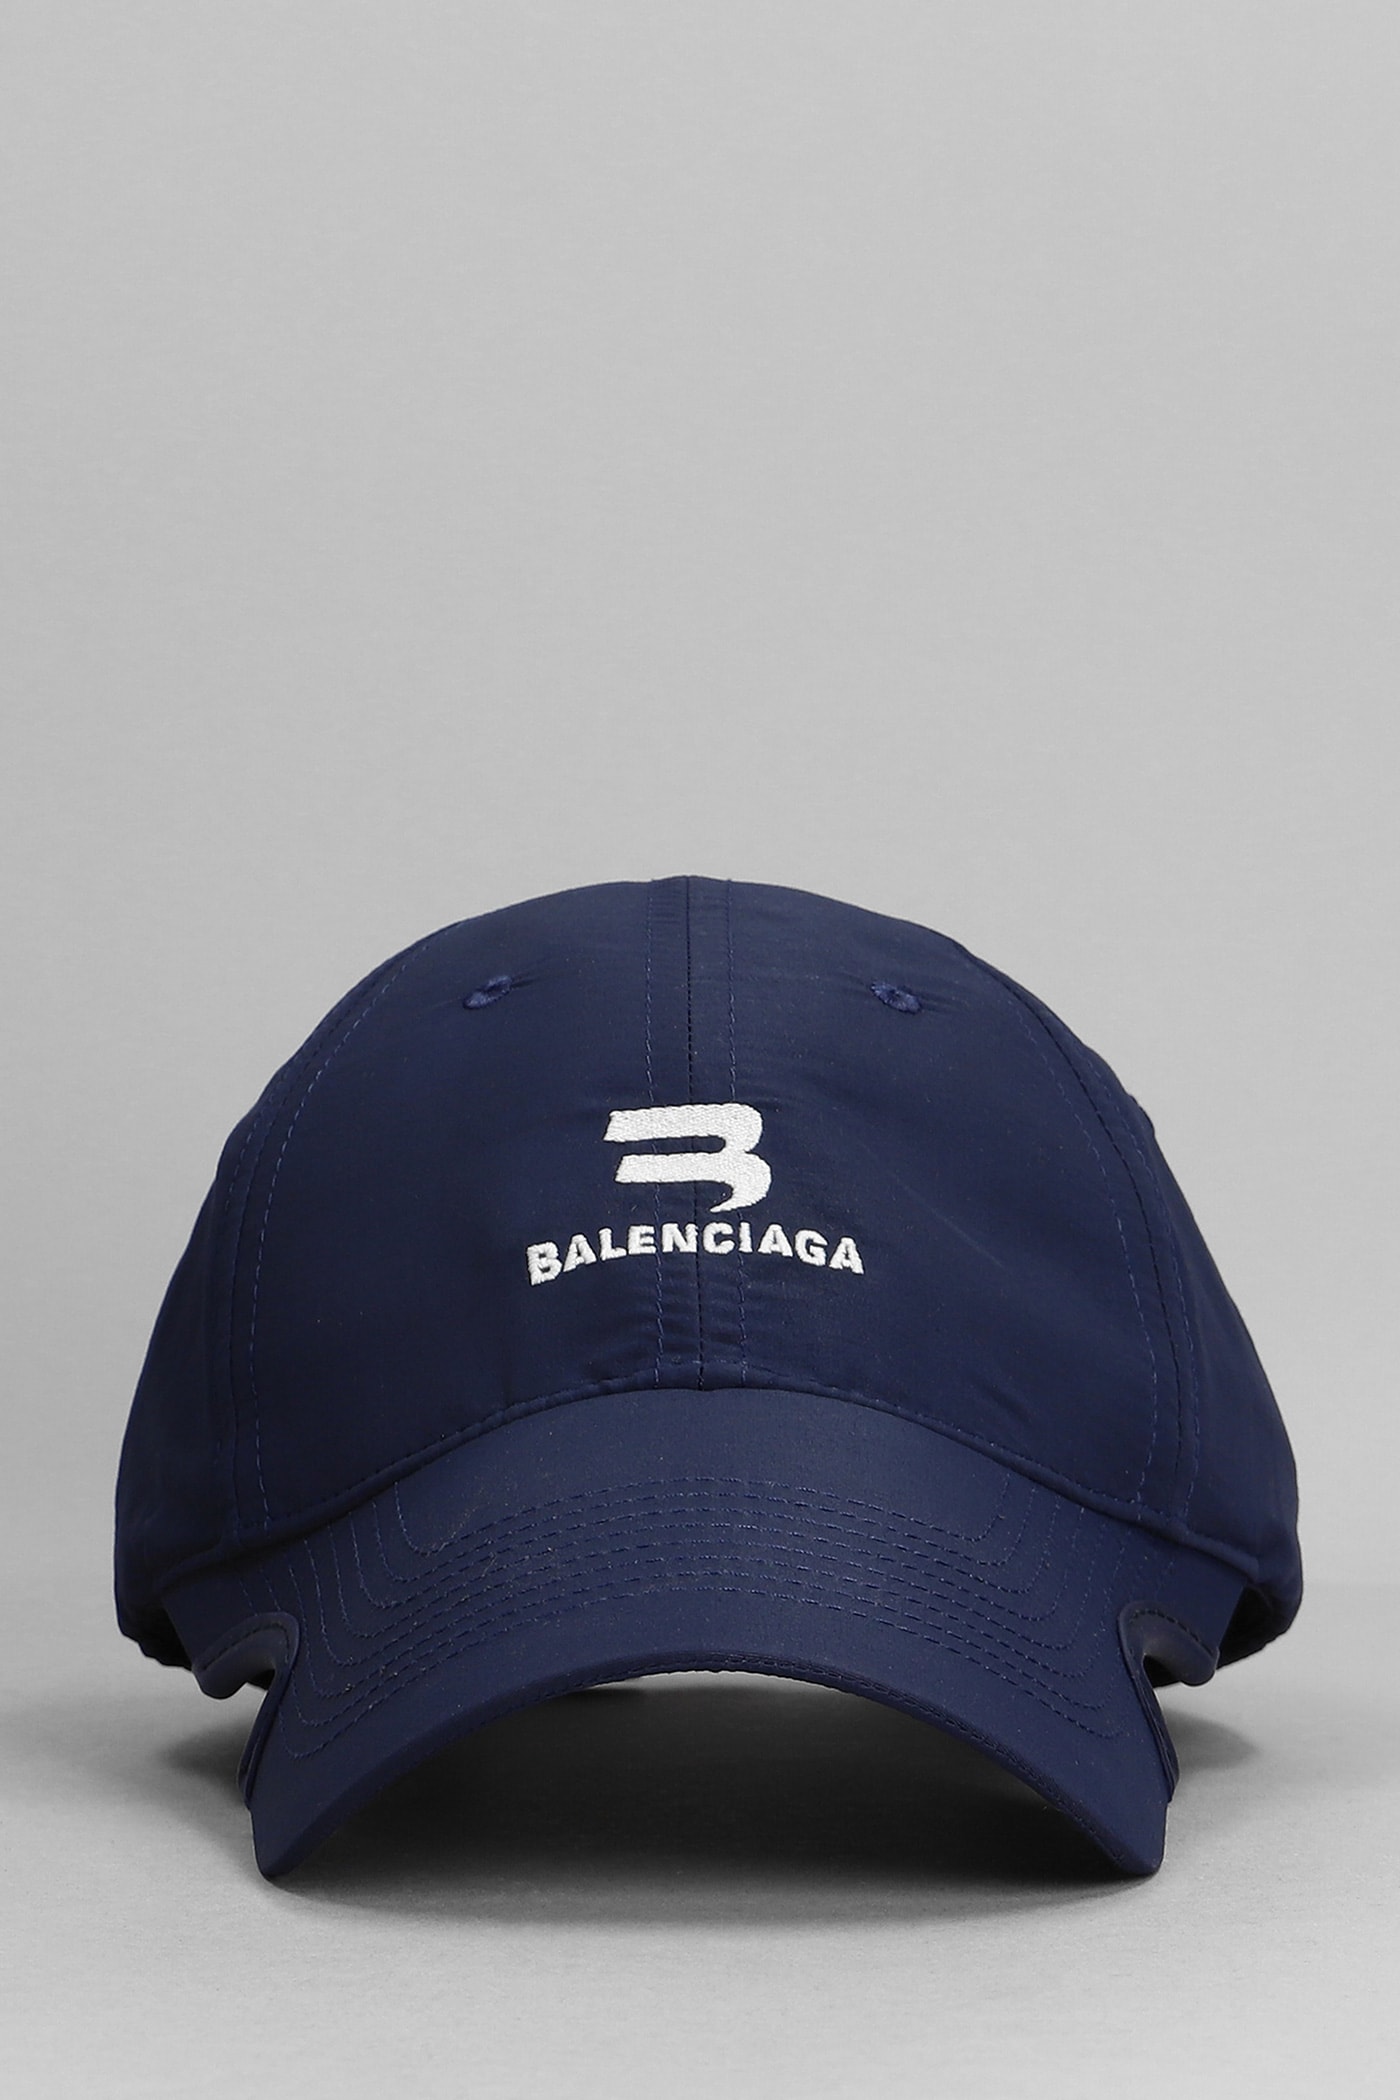 Balenciaga Hats In Blue Cotton